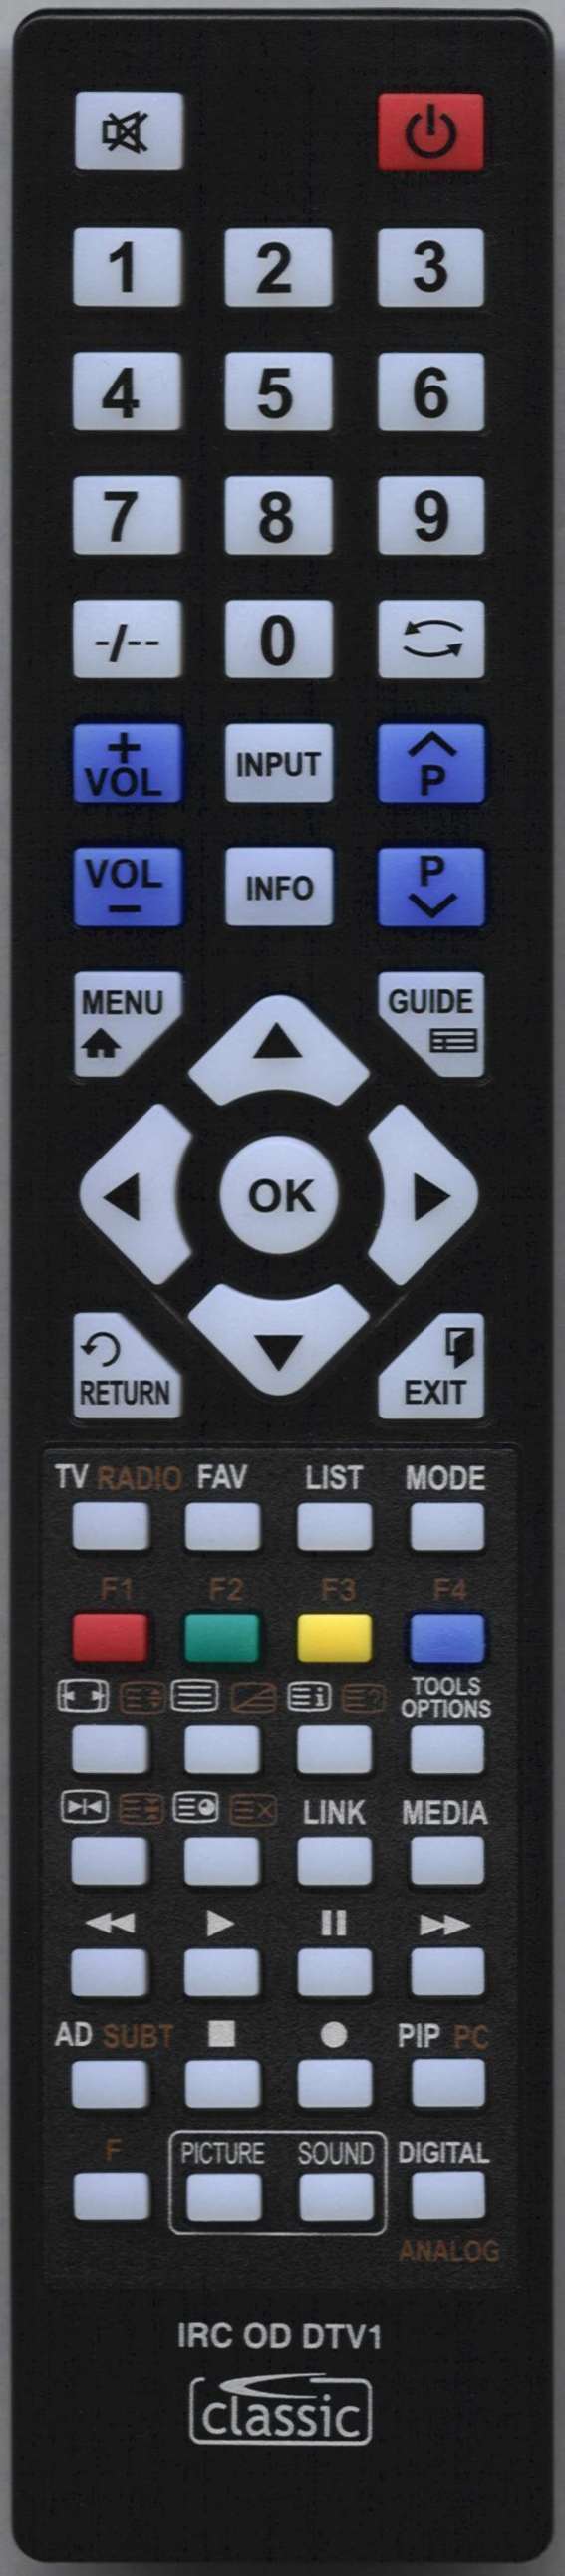 ORION TV32LB7200 Remote Control